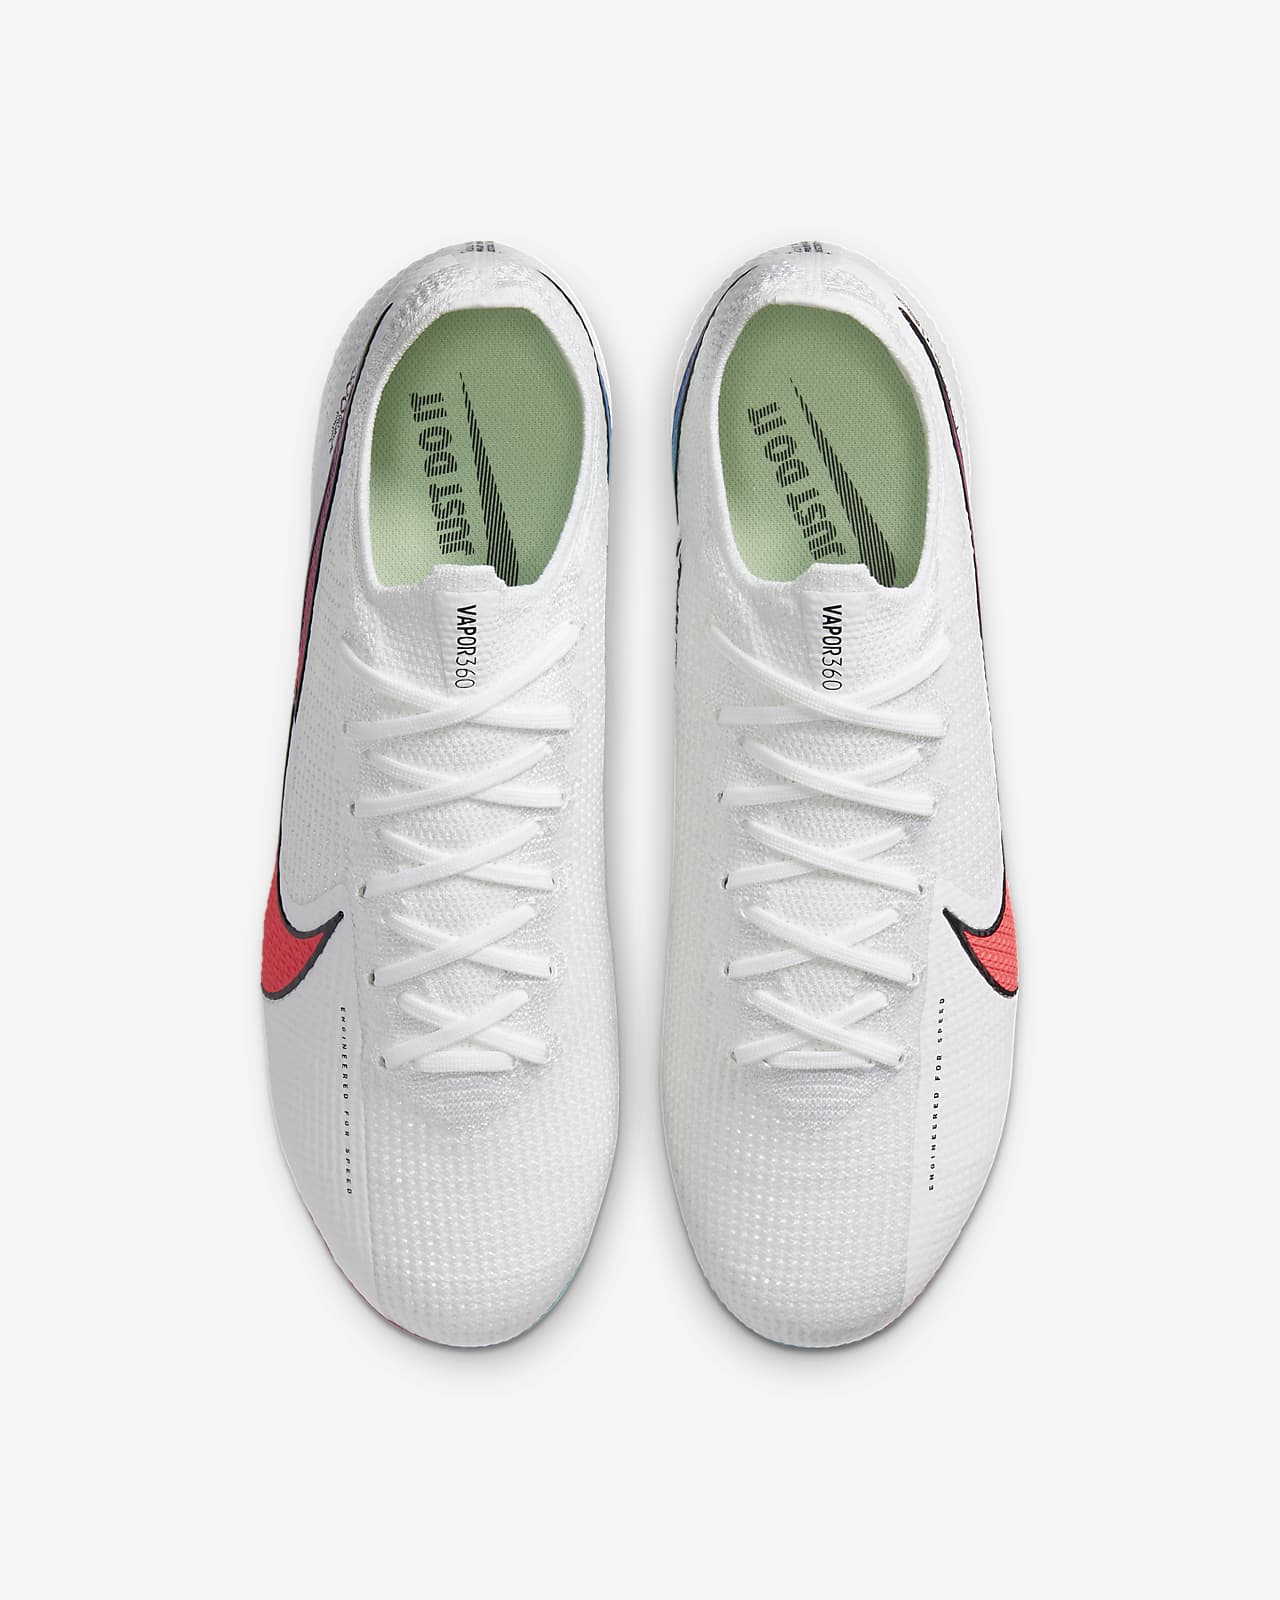 Nike Mercurial Vapor 13 Elite FG Flash Crimson - White / Hyper Jade ...